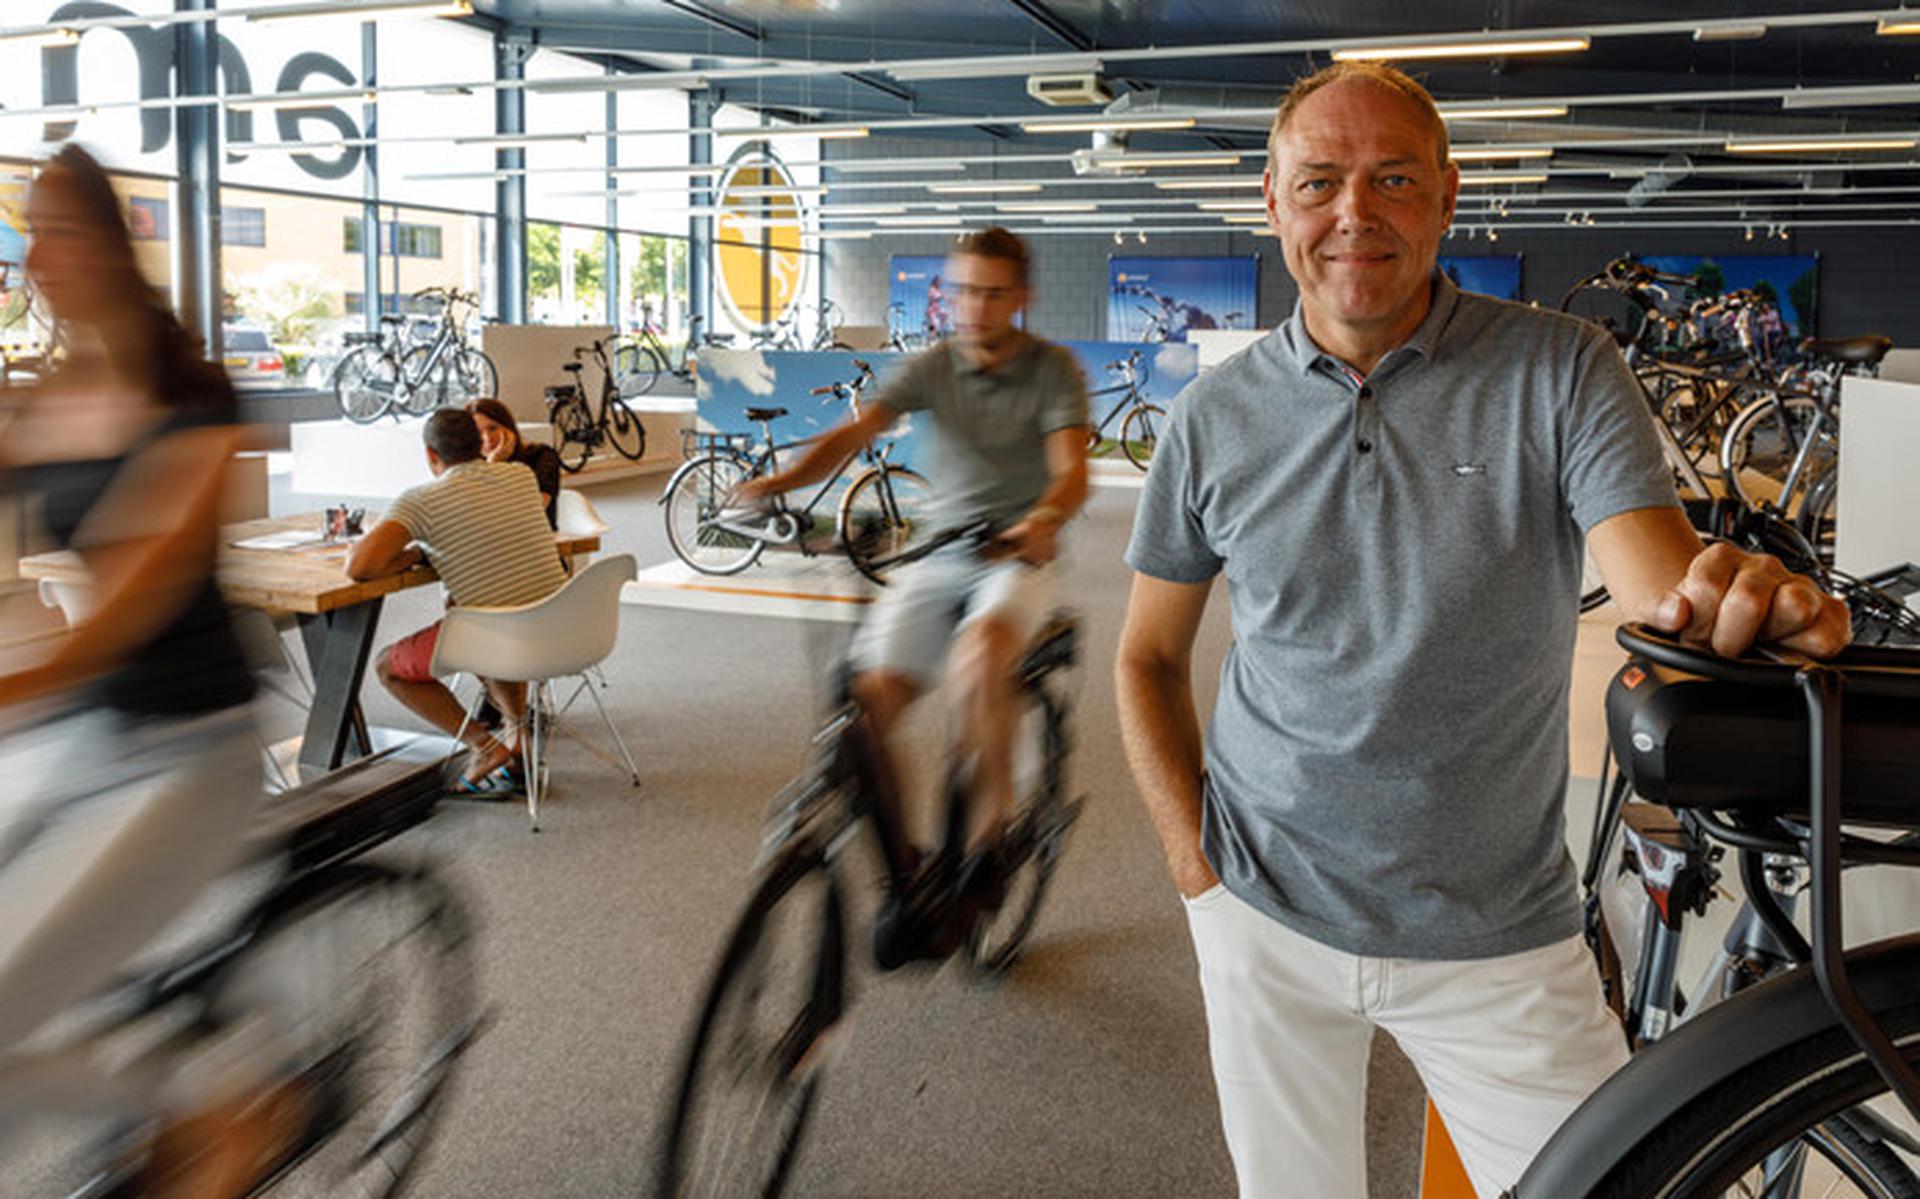 Conflict e-bikebazen loopt op: Stella en Amslod uit Meppel ruziën over reclames - Dagblad van het Noorden